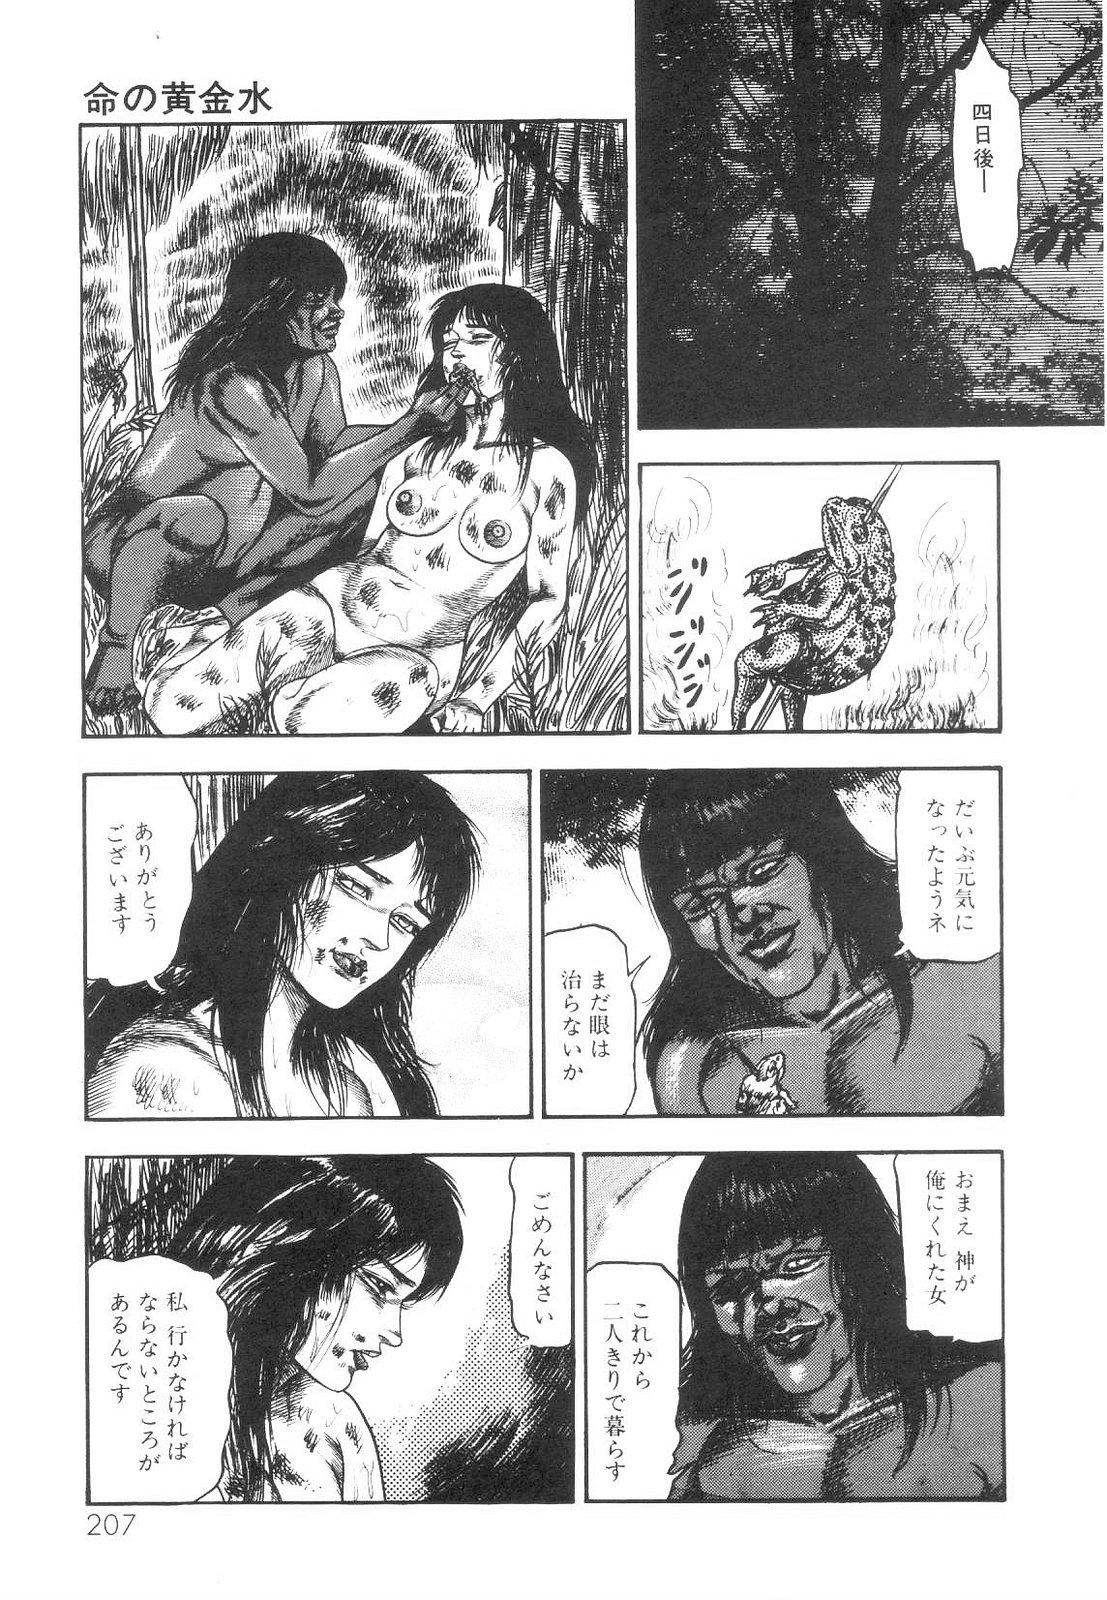 Shiro no Mokushiroku Vol. 1 - Sei Shojo Shion no Shou 207